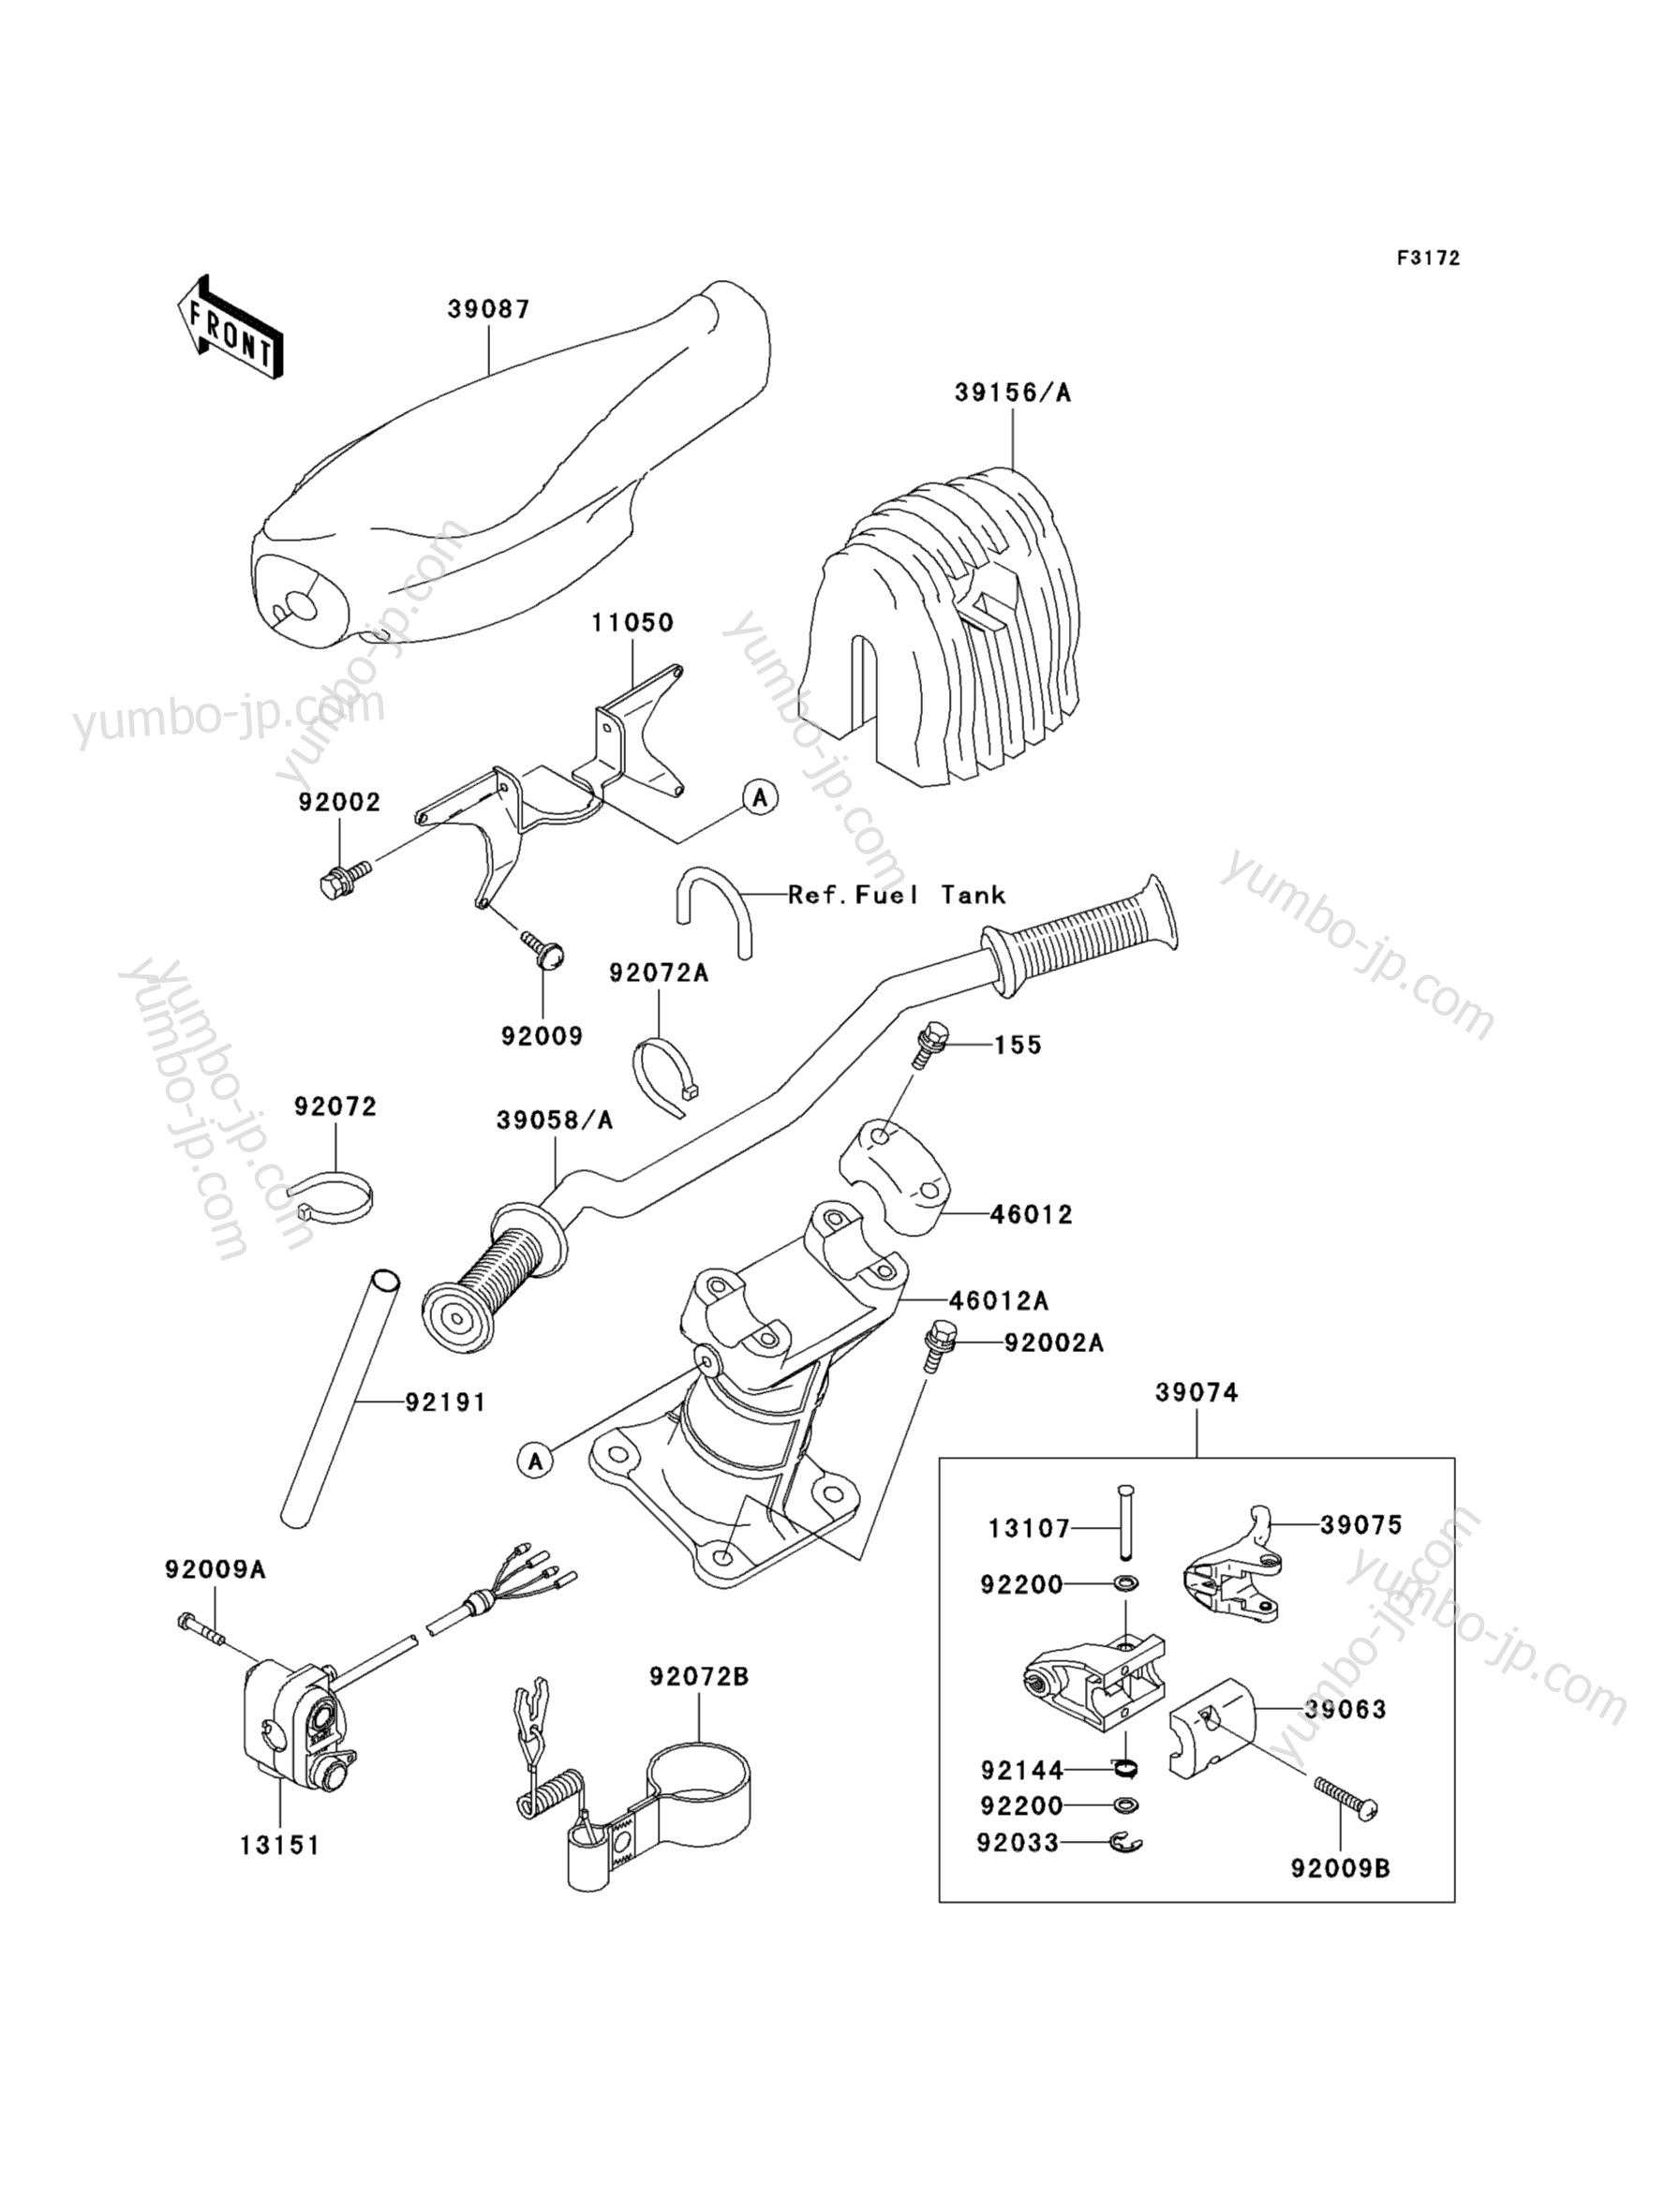 Румпель (рукоятка управления) для гидроциклов KAWASAKI JET SKI 900 STX (JT900-C2) 2002 г.